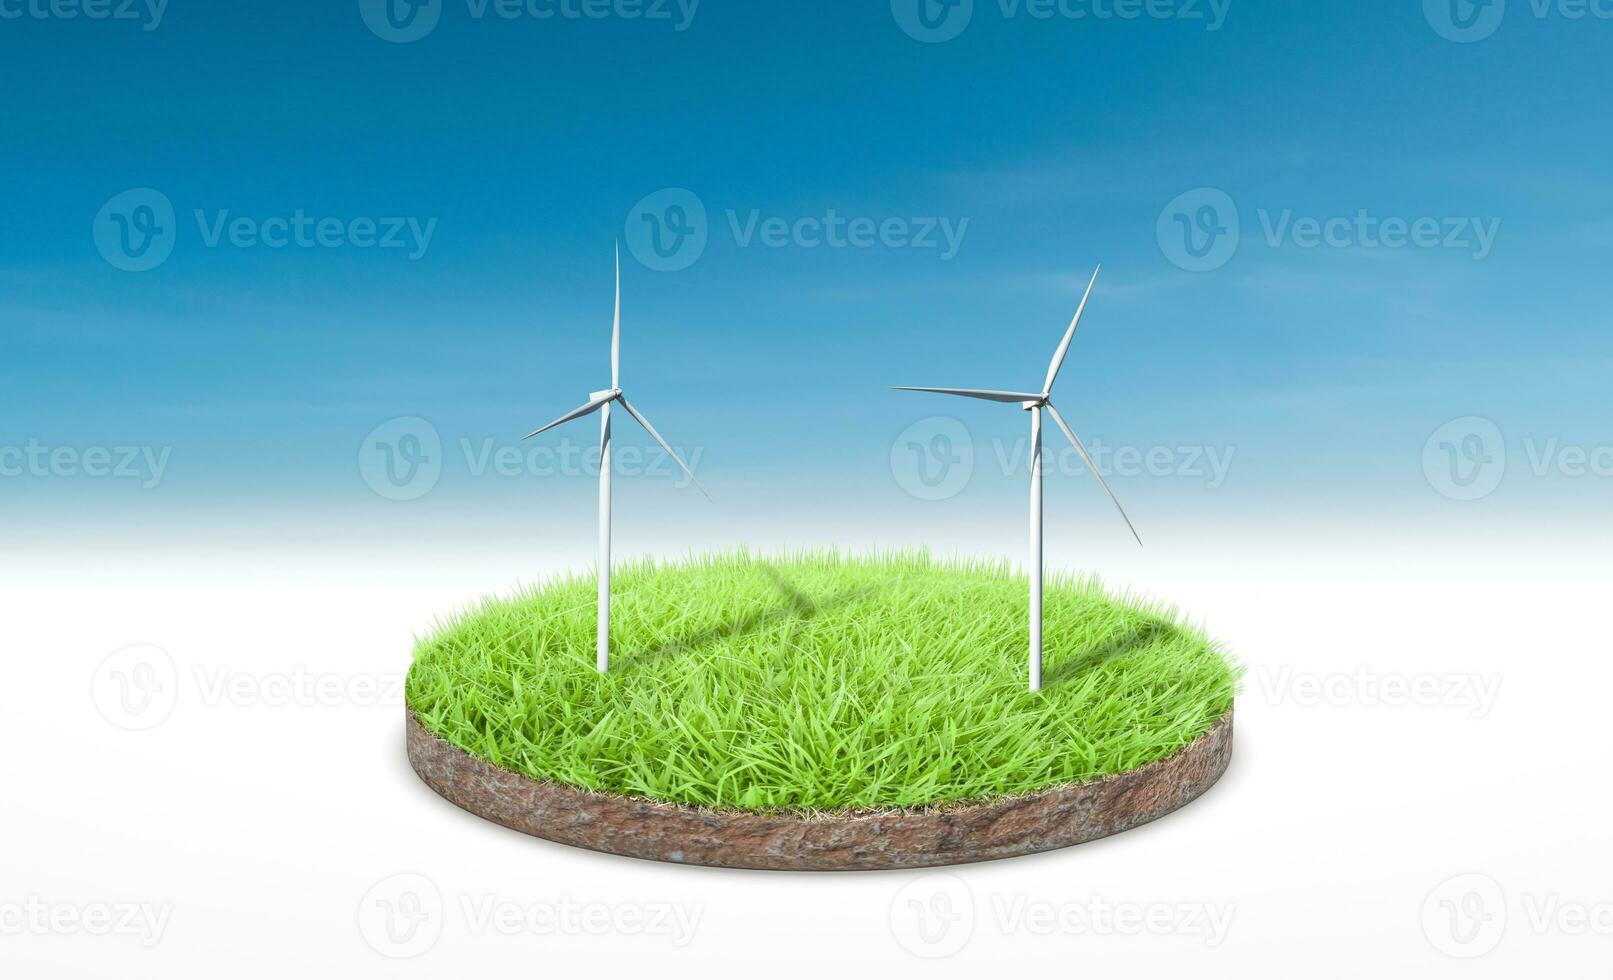 renderização 3D. seção transversal de grama verde com turbina eólica sobre fundo de céu azul. foto